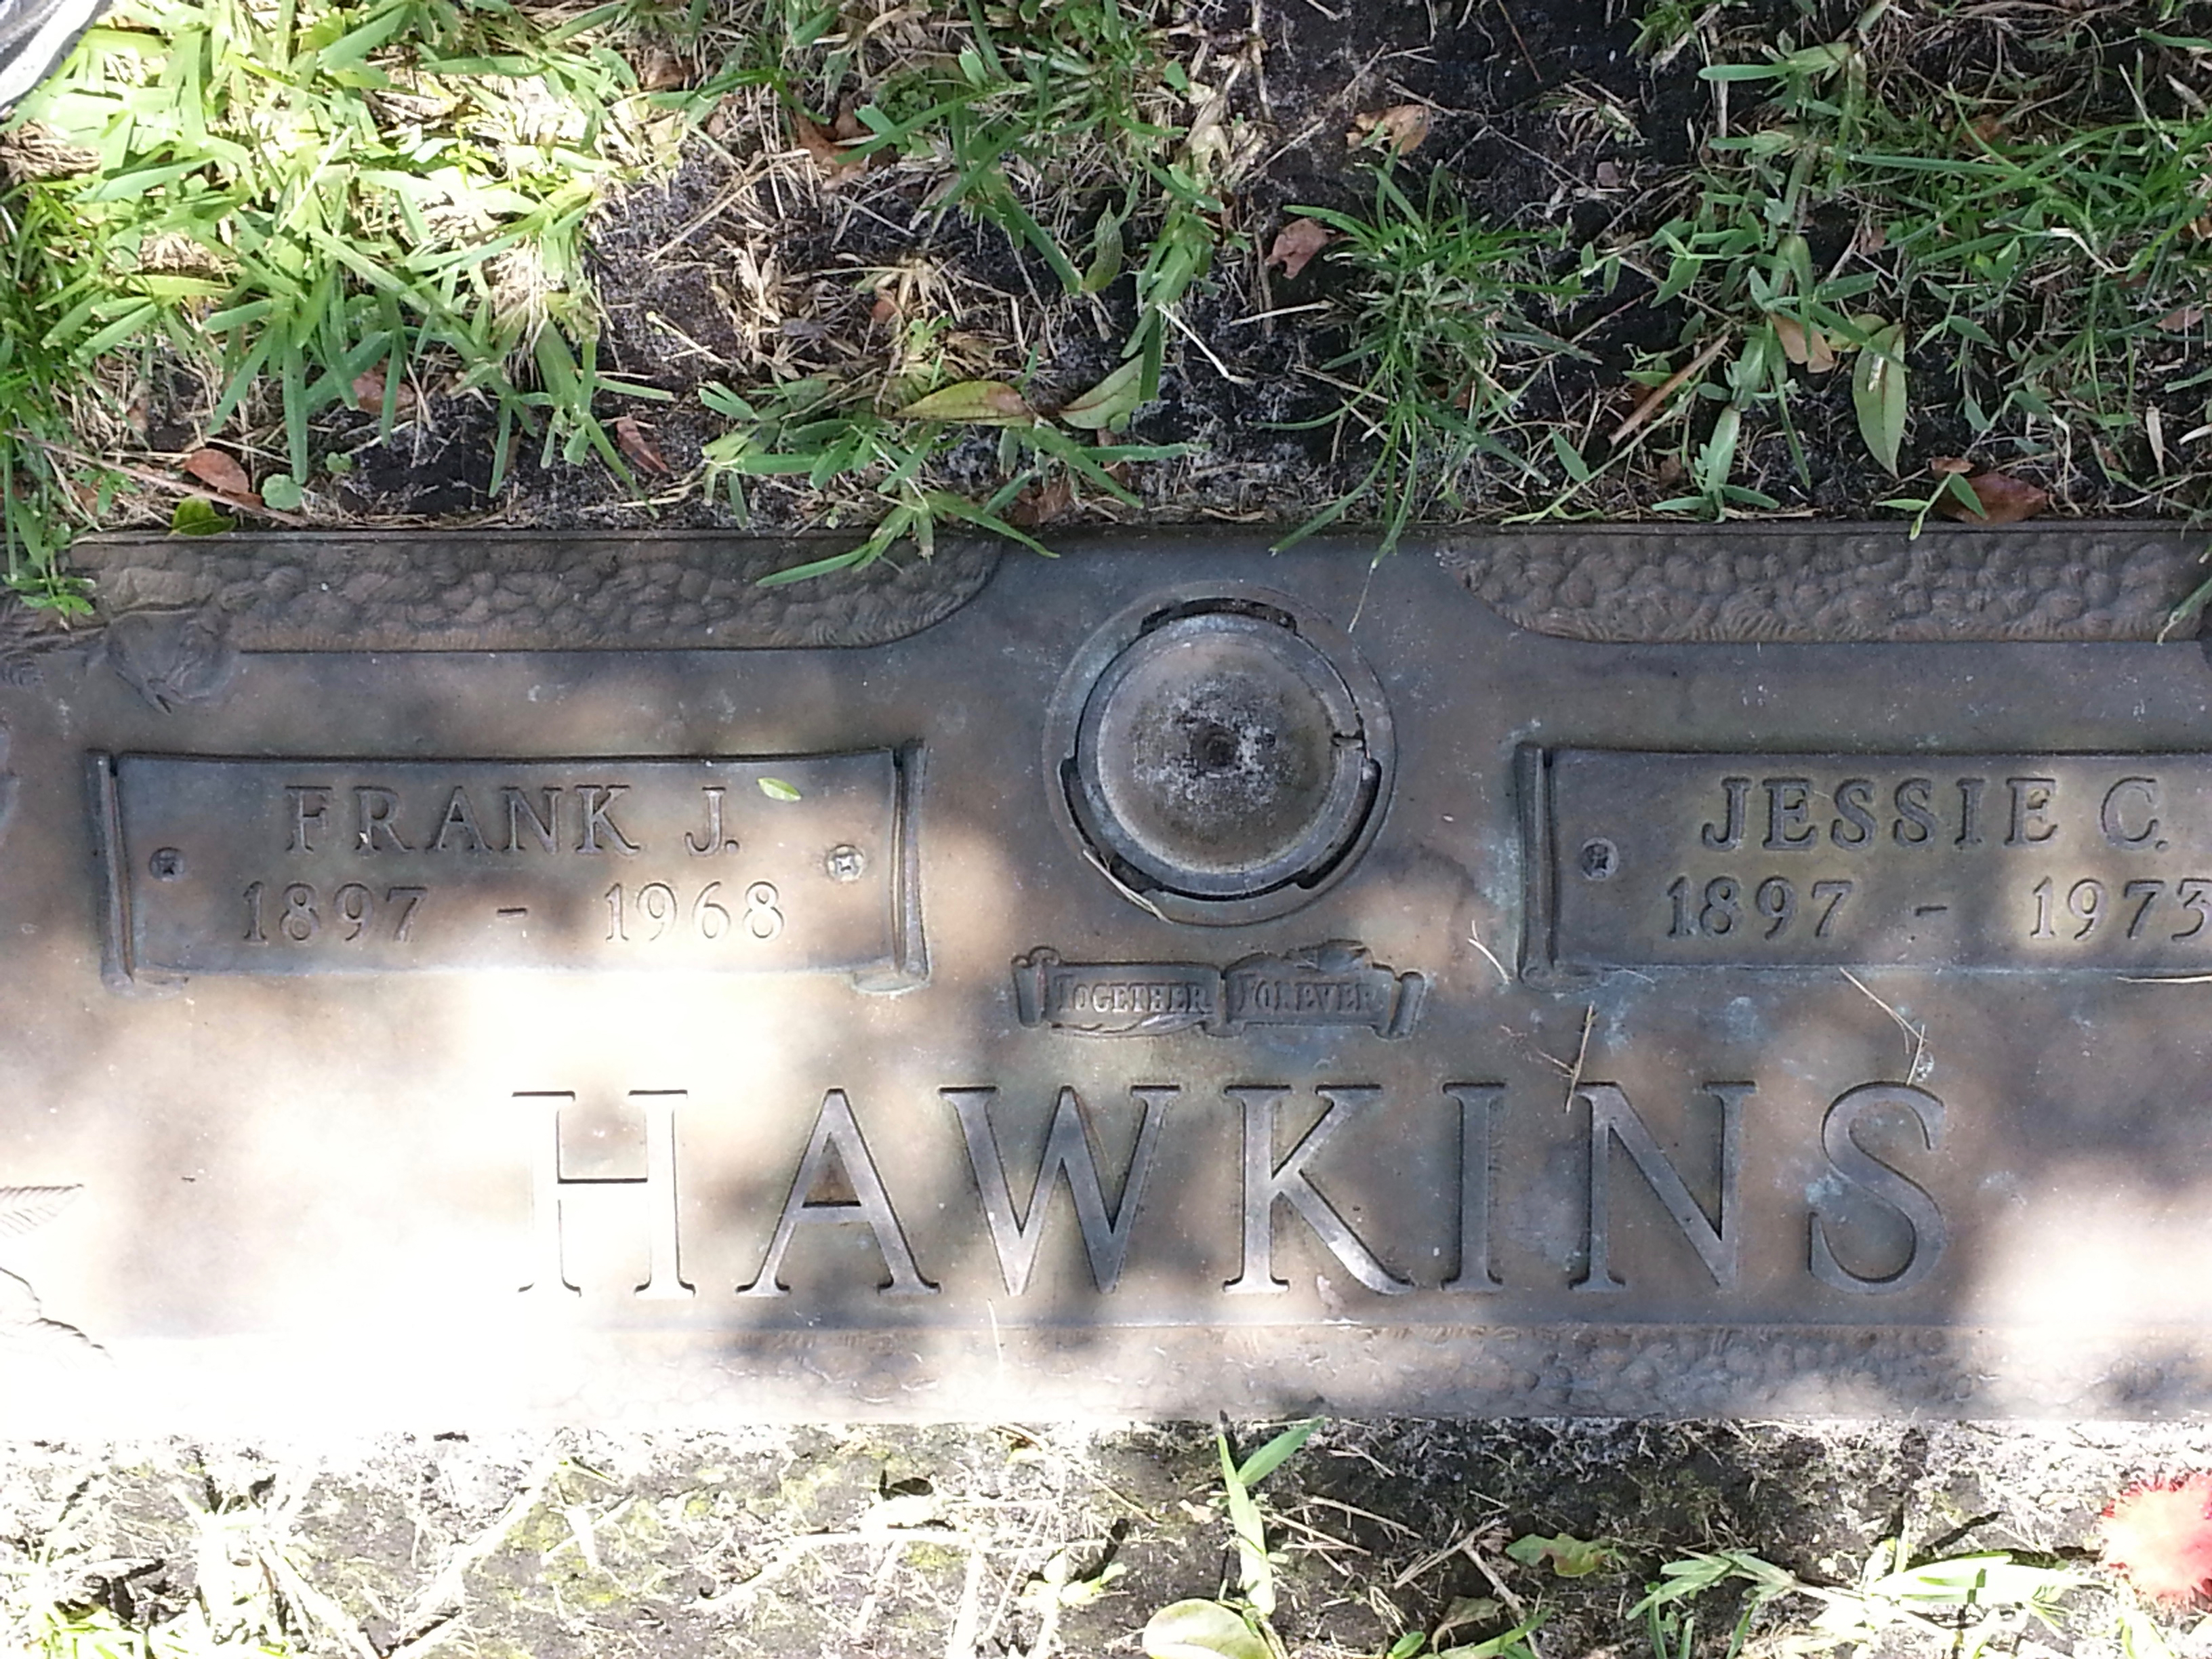 Frank J Hawkins